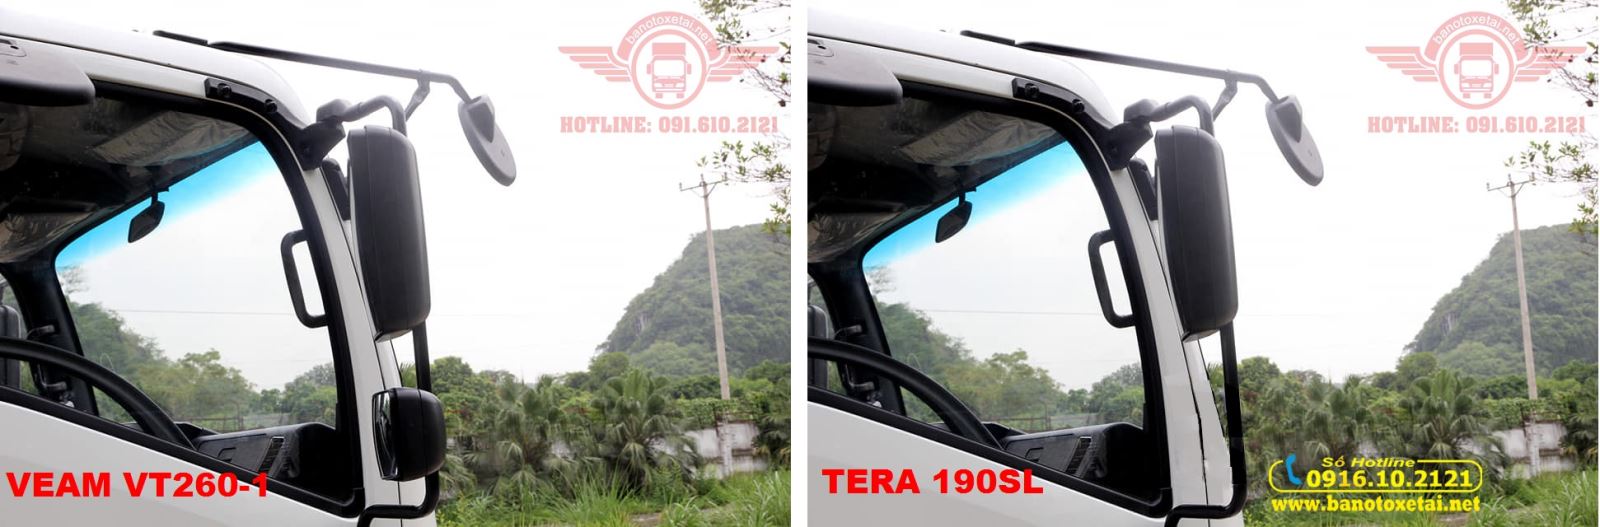 Gương chiếu hậu Veam VT260-1 và Tera 190SL